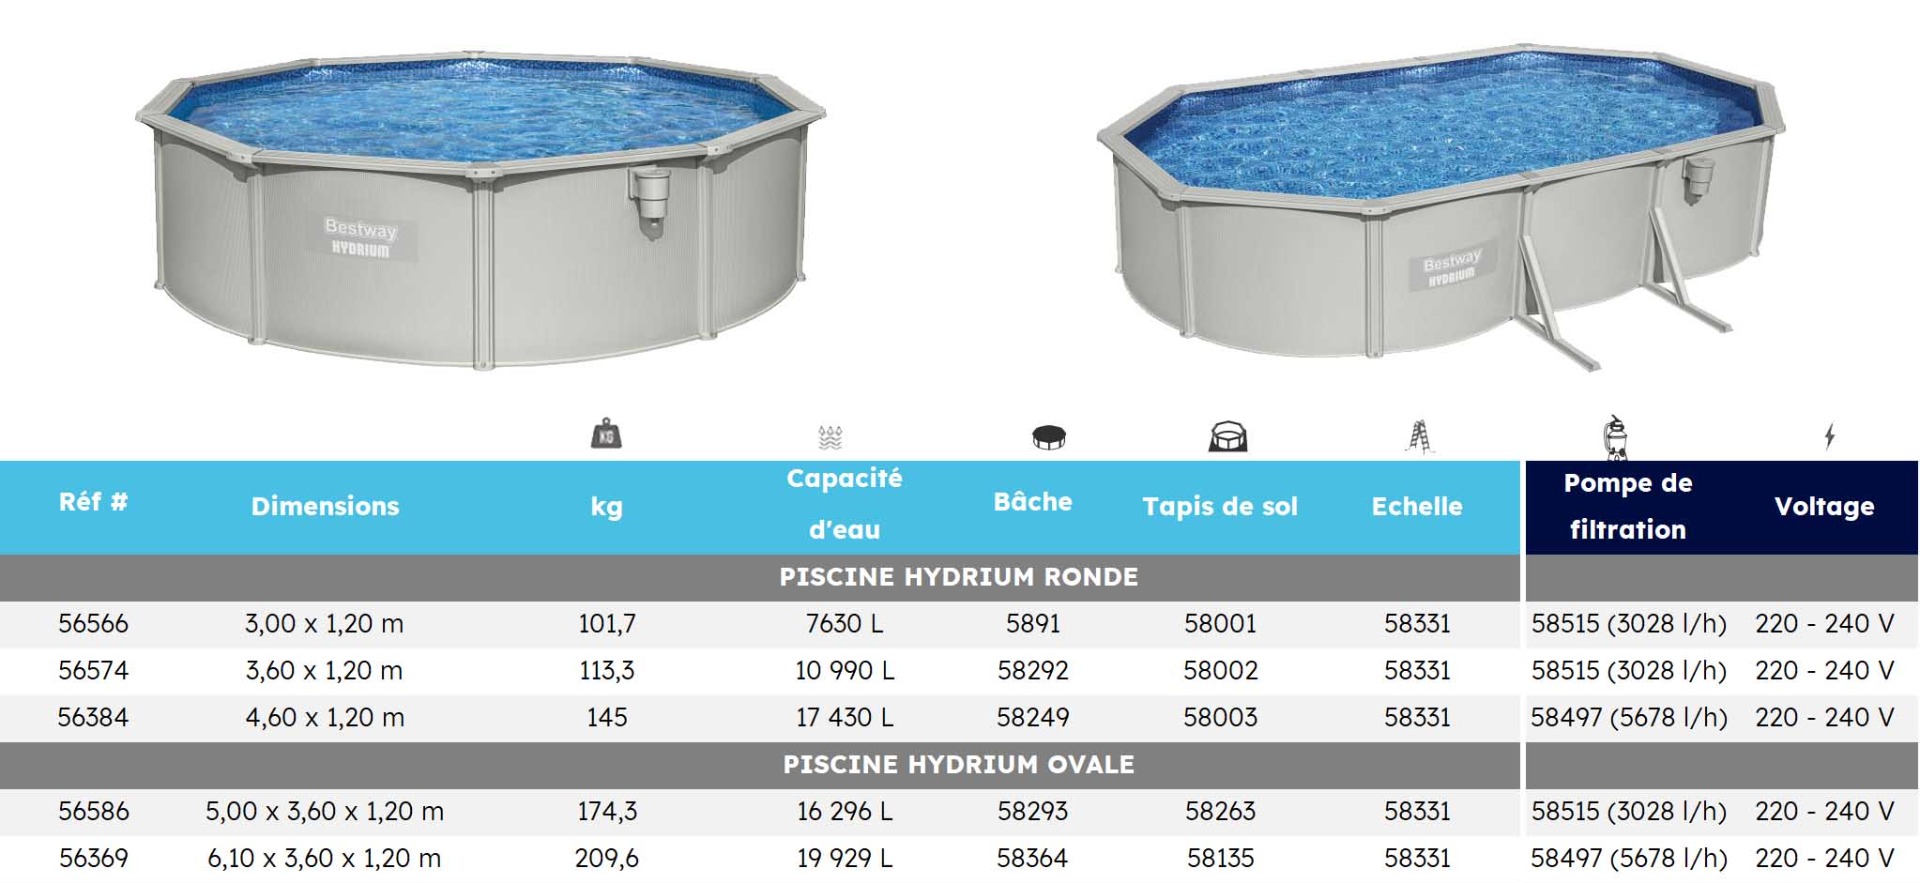 Dimensions des piscines Hydrium